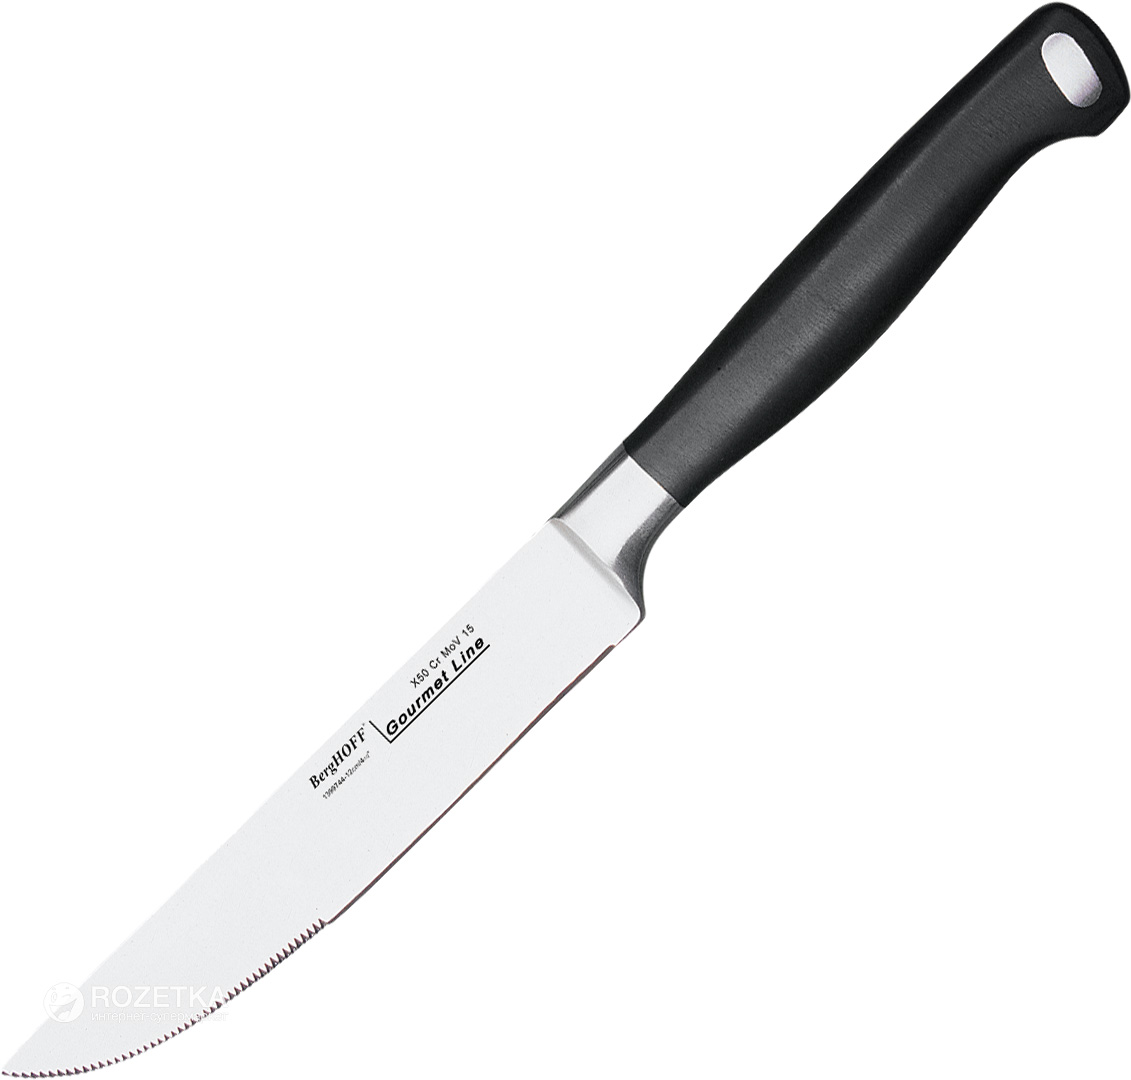 Акция на Кухонный нож BergHOFF Gourmet Line для стейков 114 мм Black (1399744) от Rozetka UA